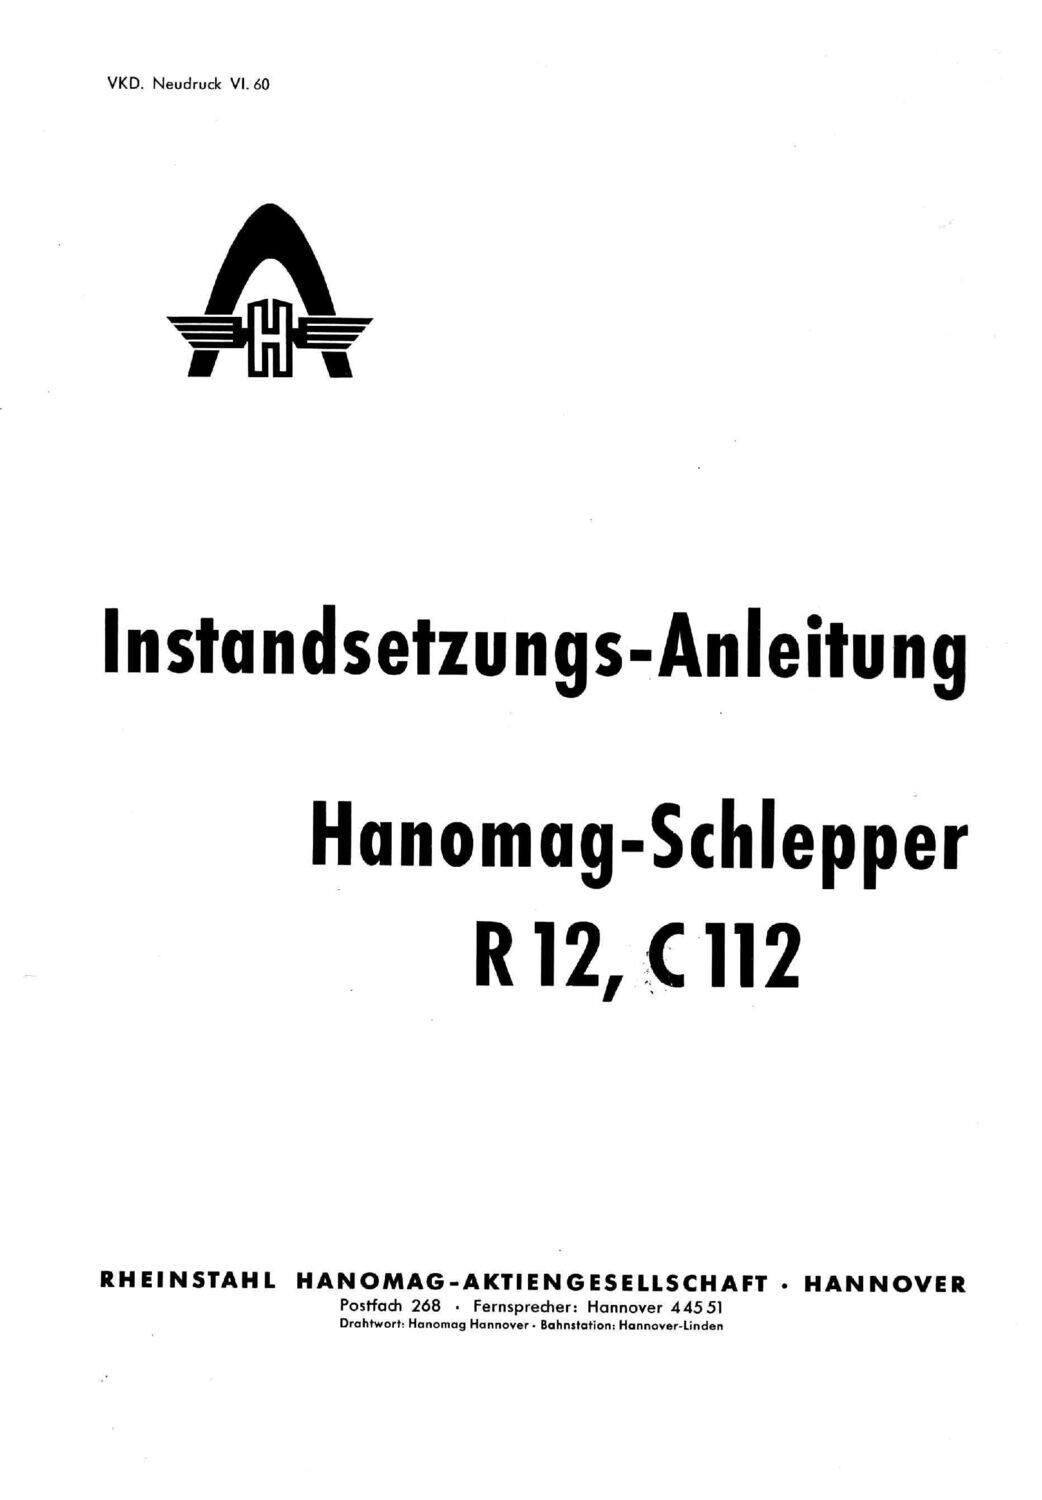 R12, C112 Instandsetzungsanleitung , komplett, Neudruck Juni 1960